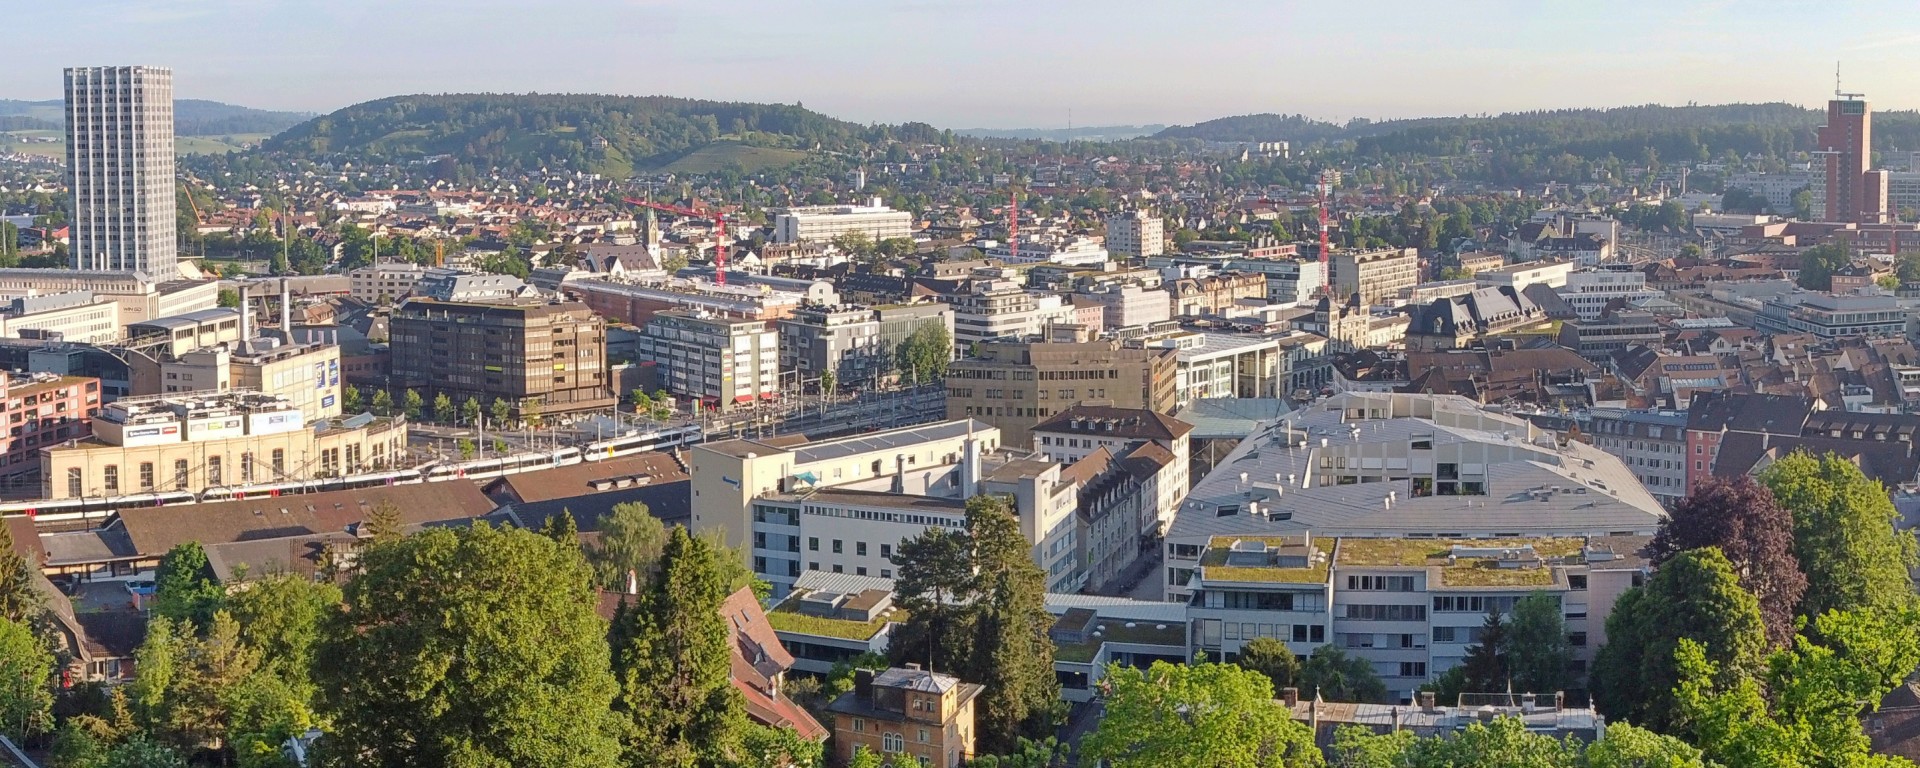 Der Standort von Vontobel in der Stadt Winterthur - Panorama über die Stadt Winterthur